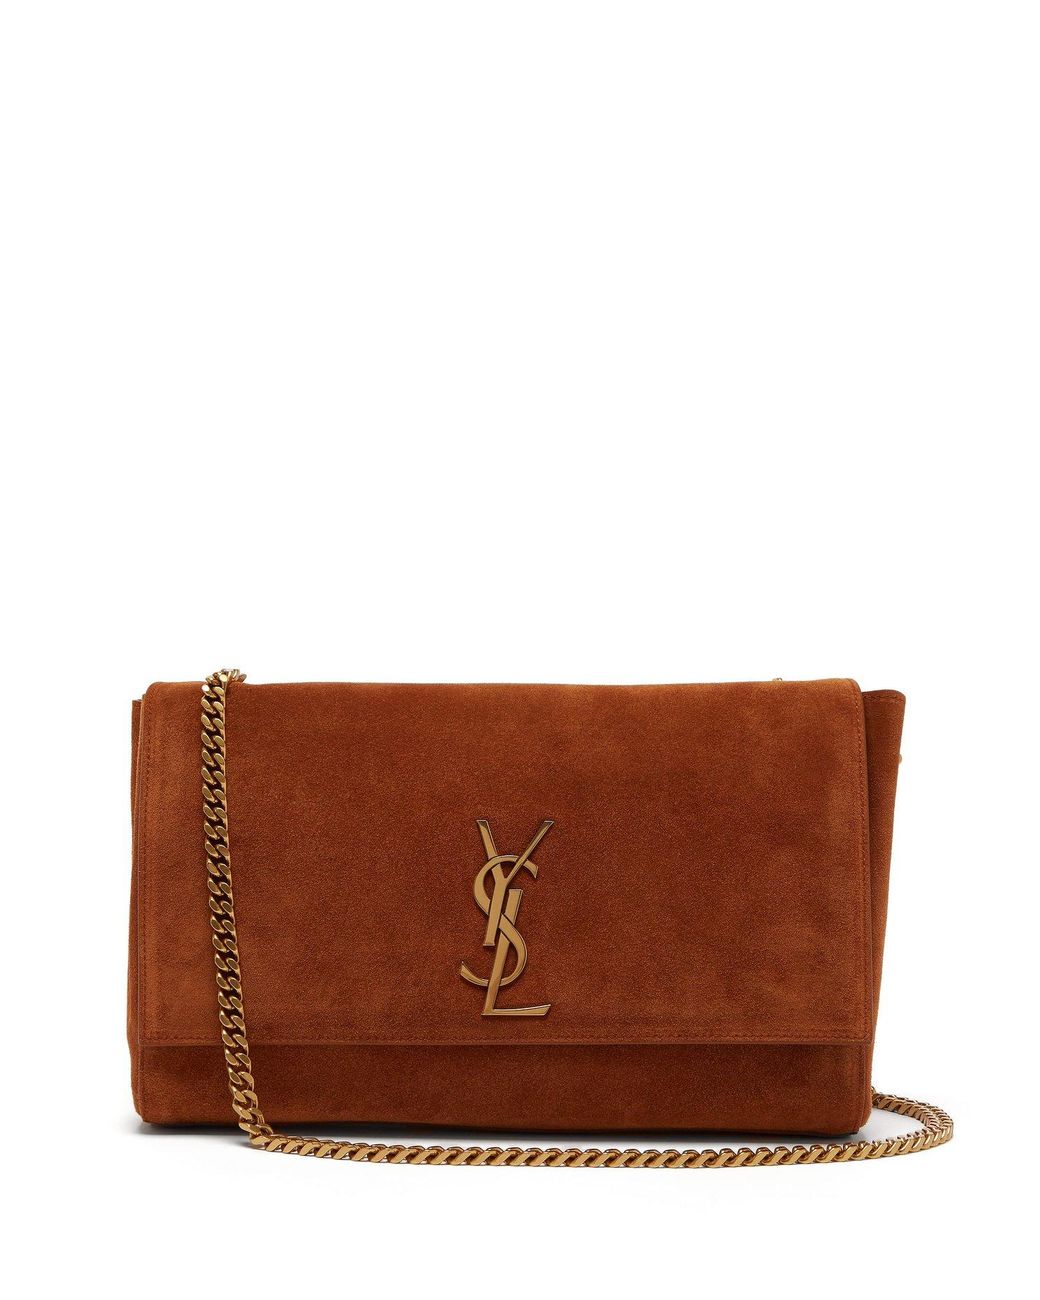 Saint Laurent Kate Supple Reversible Leather Shoulder Bag